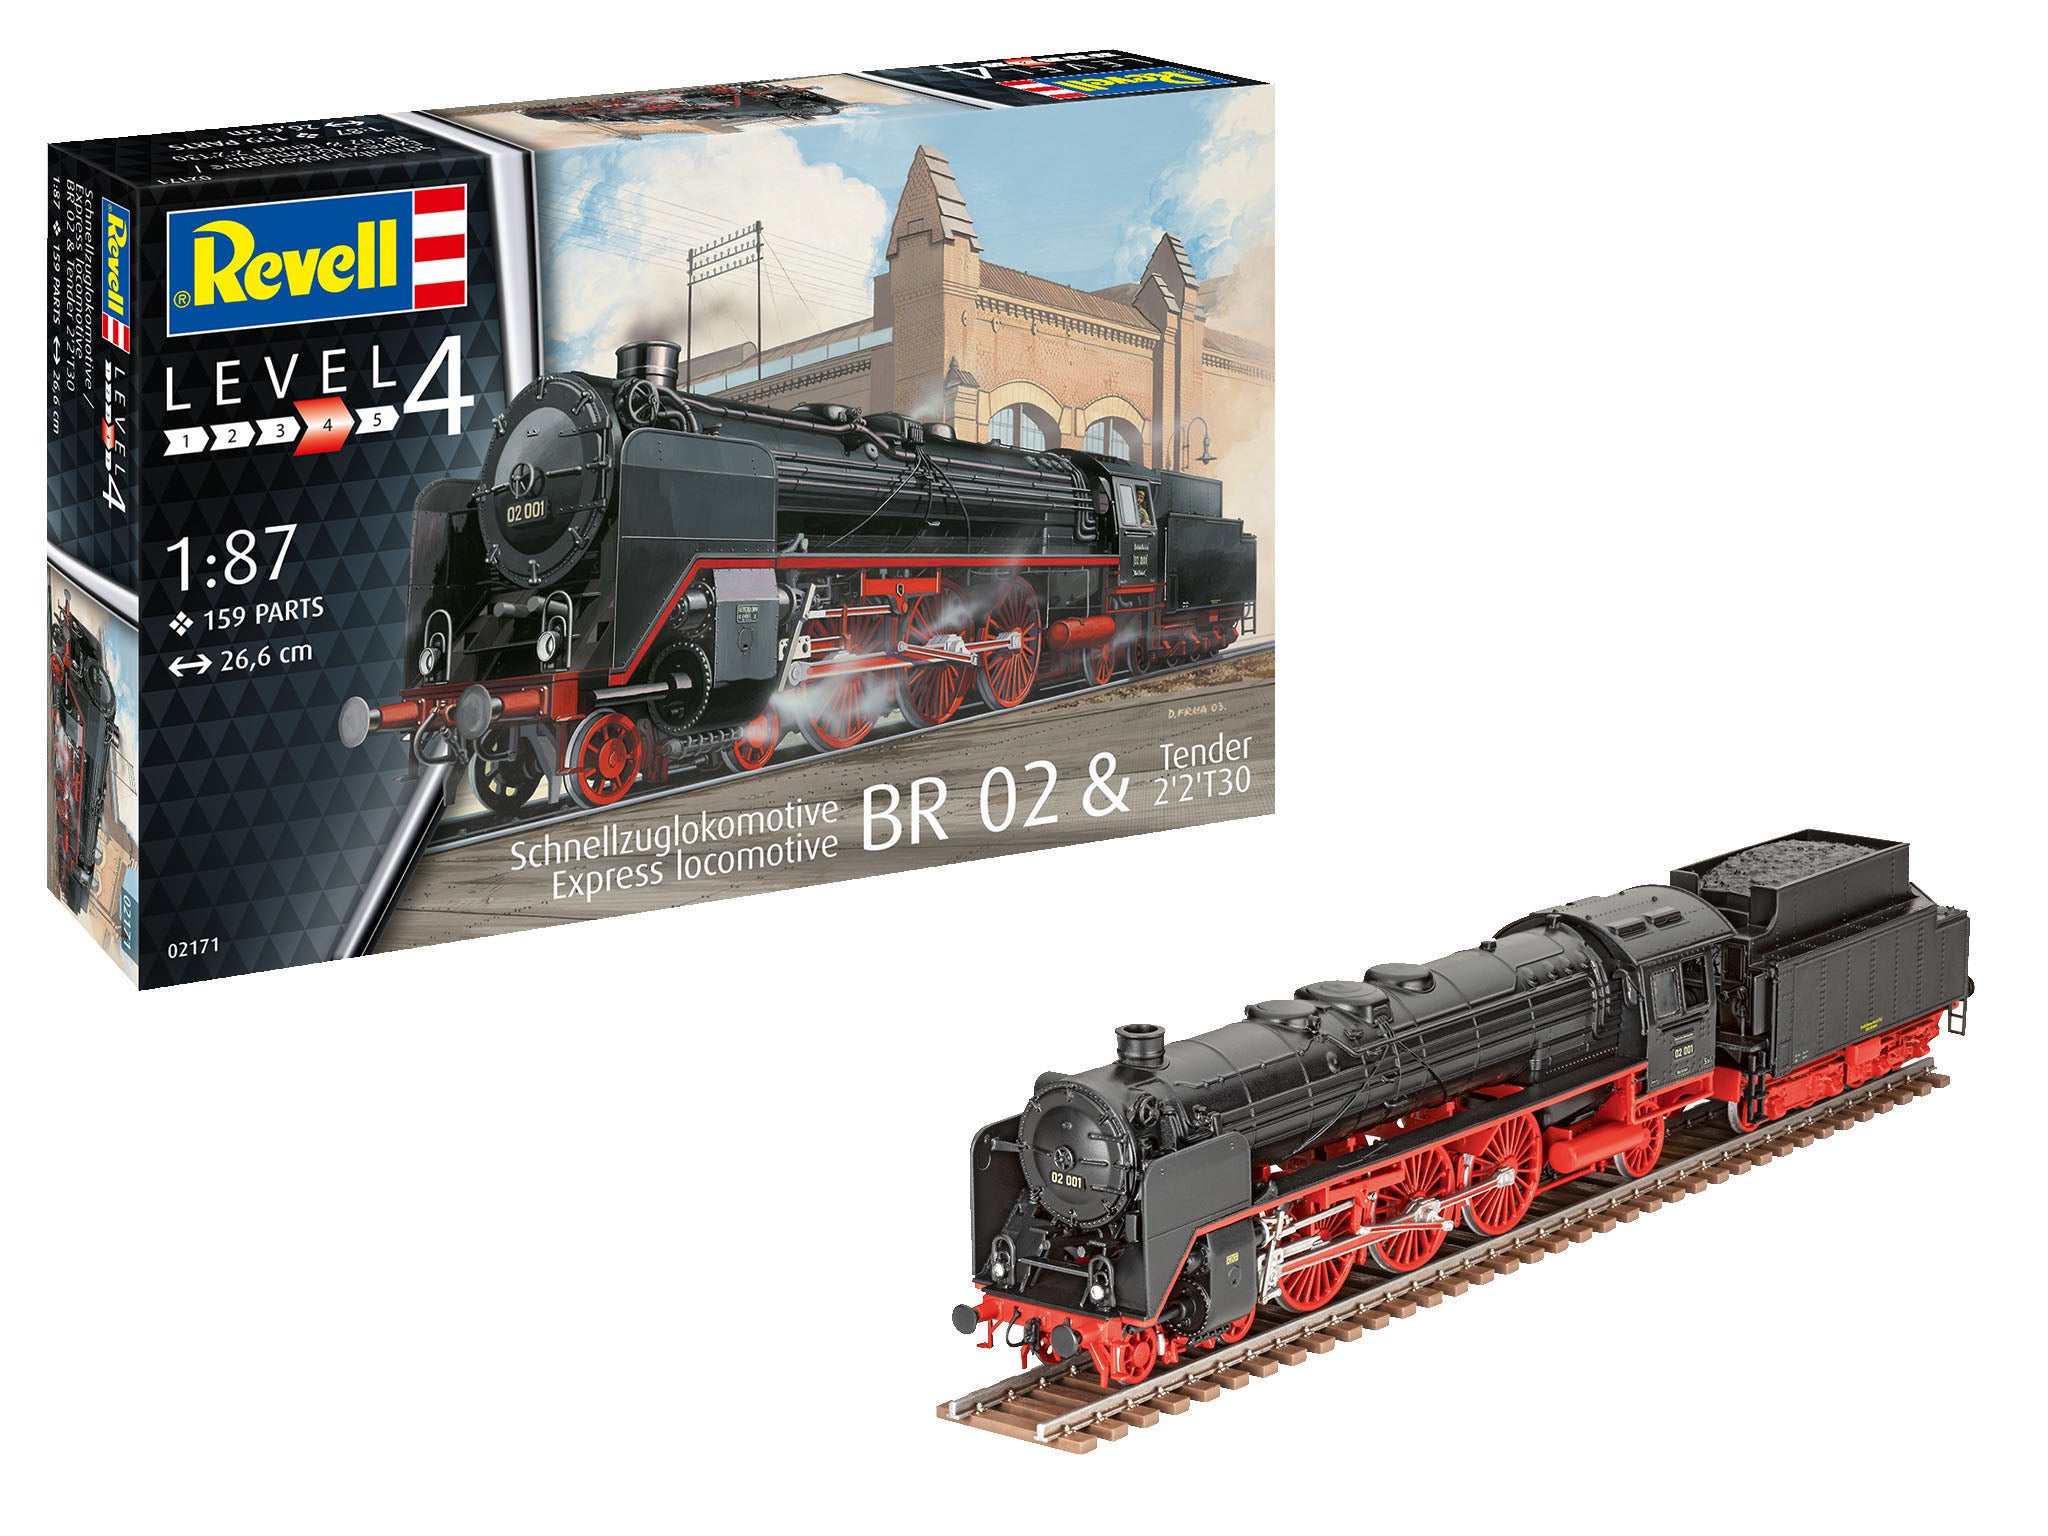 Train Model Kit Revell Express locomotive BR 02 & Tender 2'2'T30 1:87